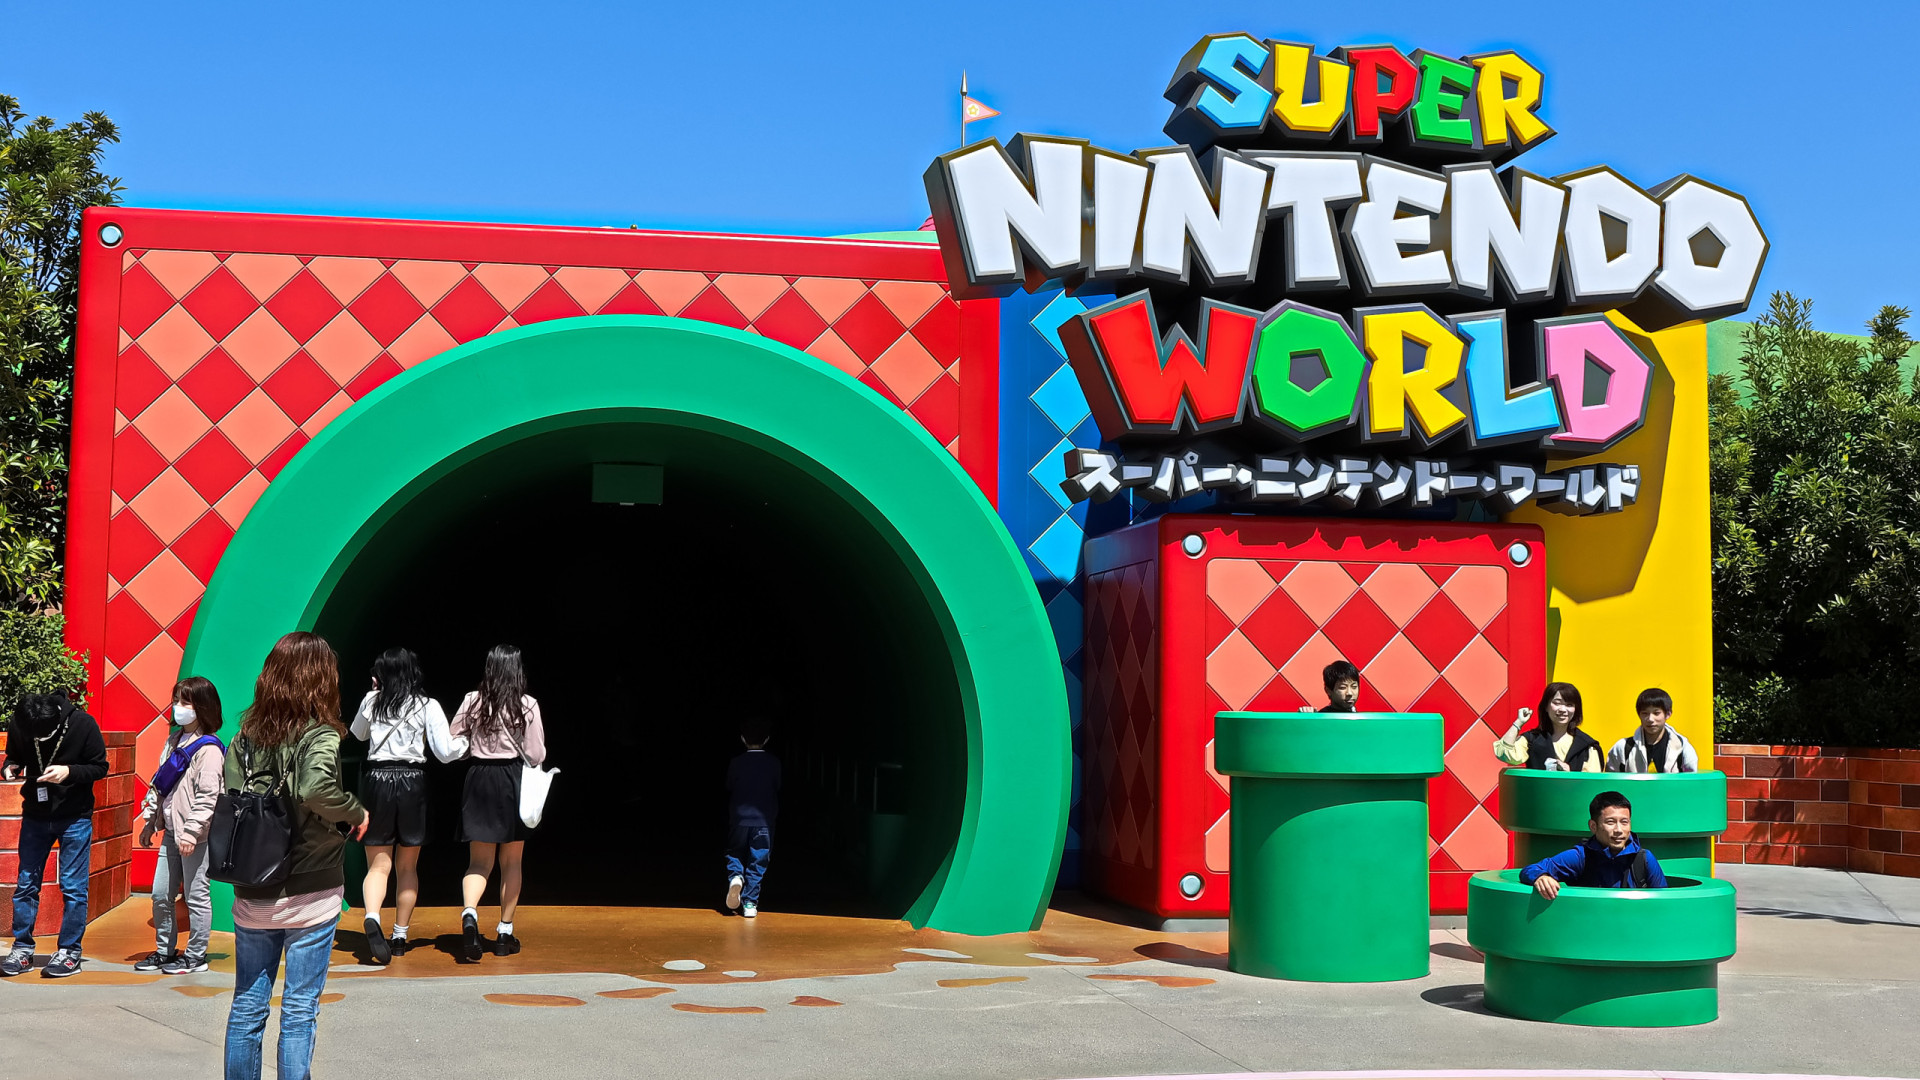 Conheça o Super Nintendo World, parque temático de Mario Bros na Califórnia